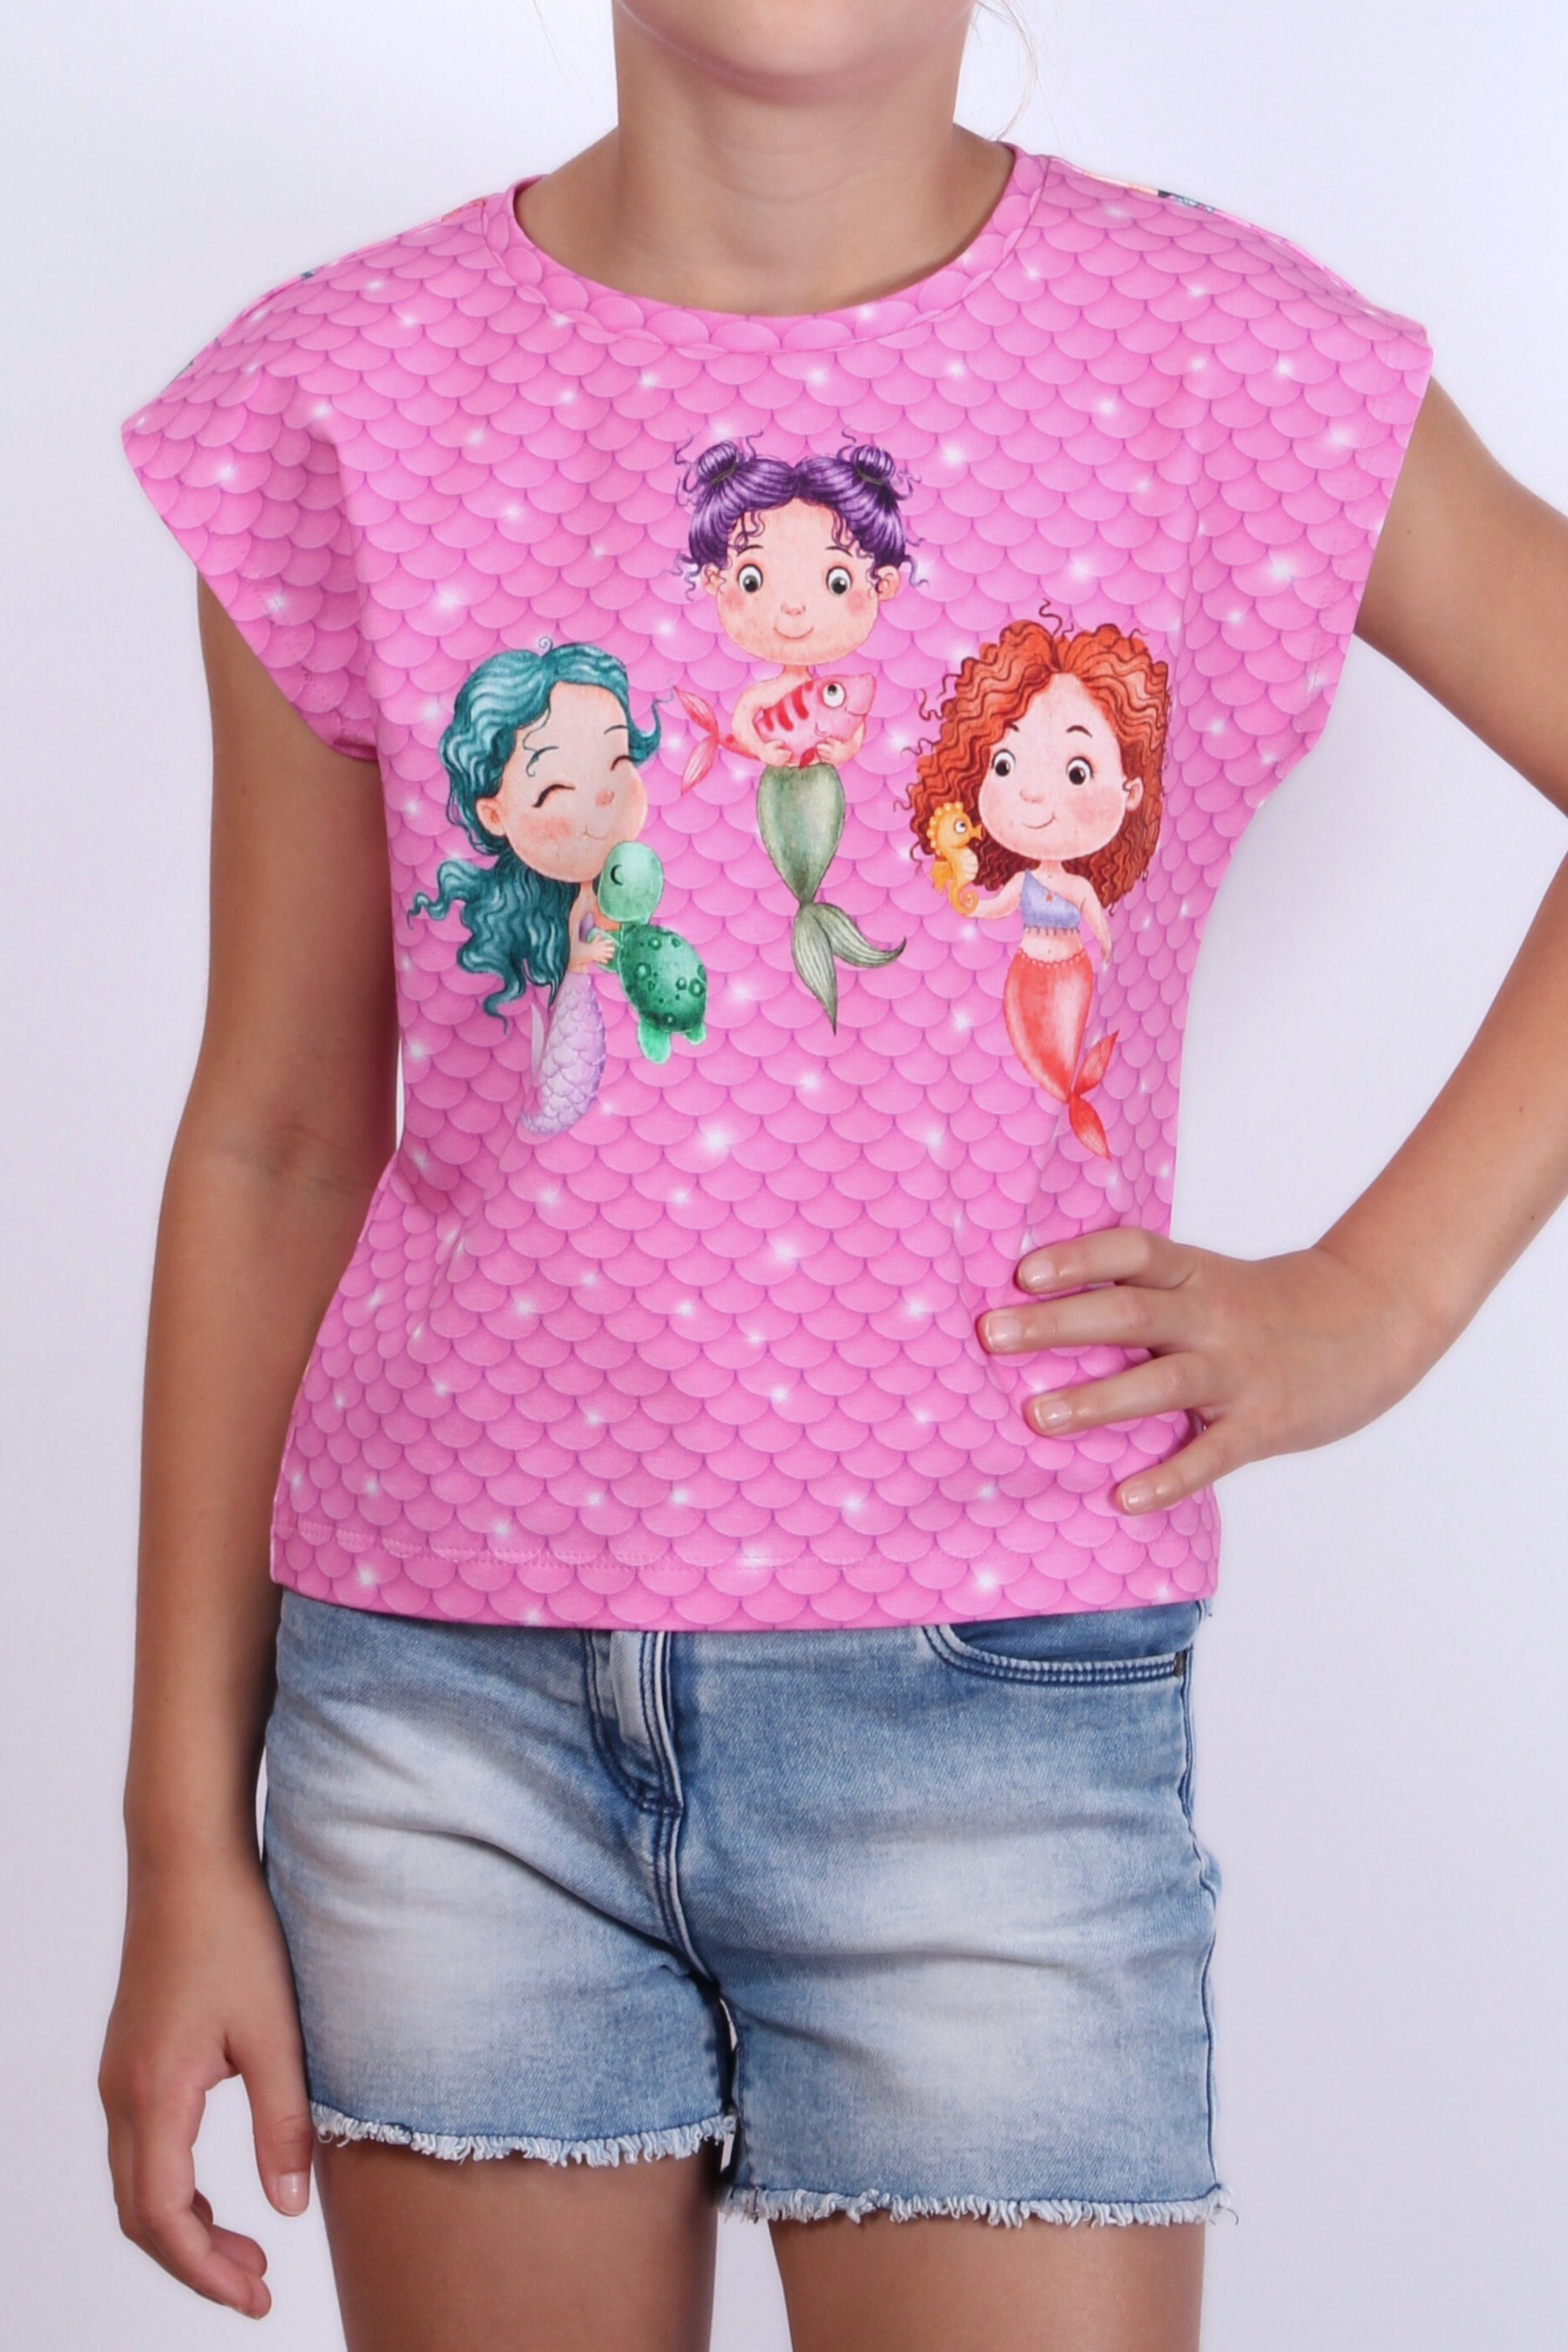 coolismo europäische Print-Shirt für Meerjungfrau Mädchen Produktion Baumwolle, T-Shirt Motiv